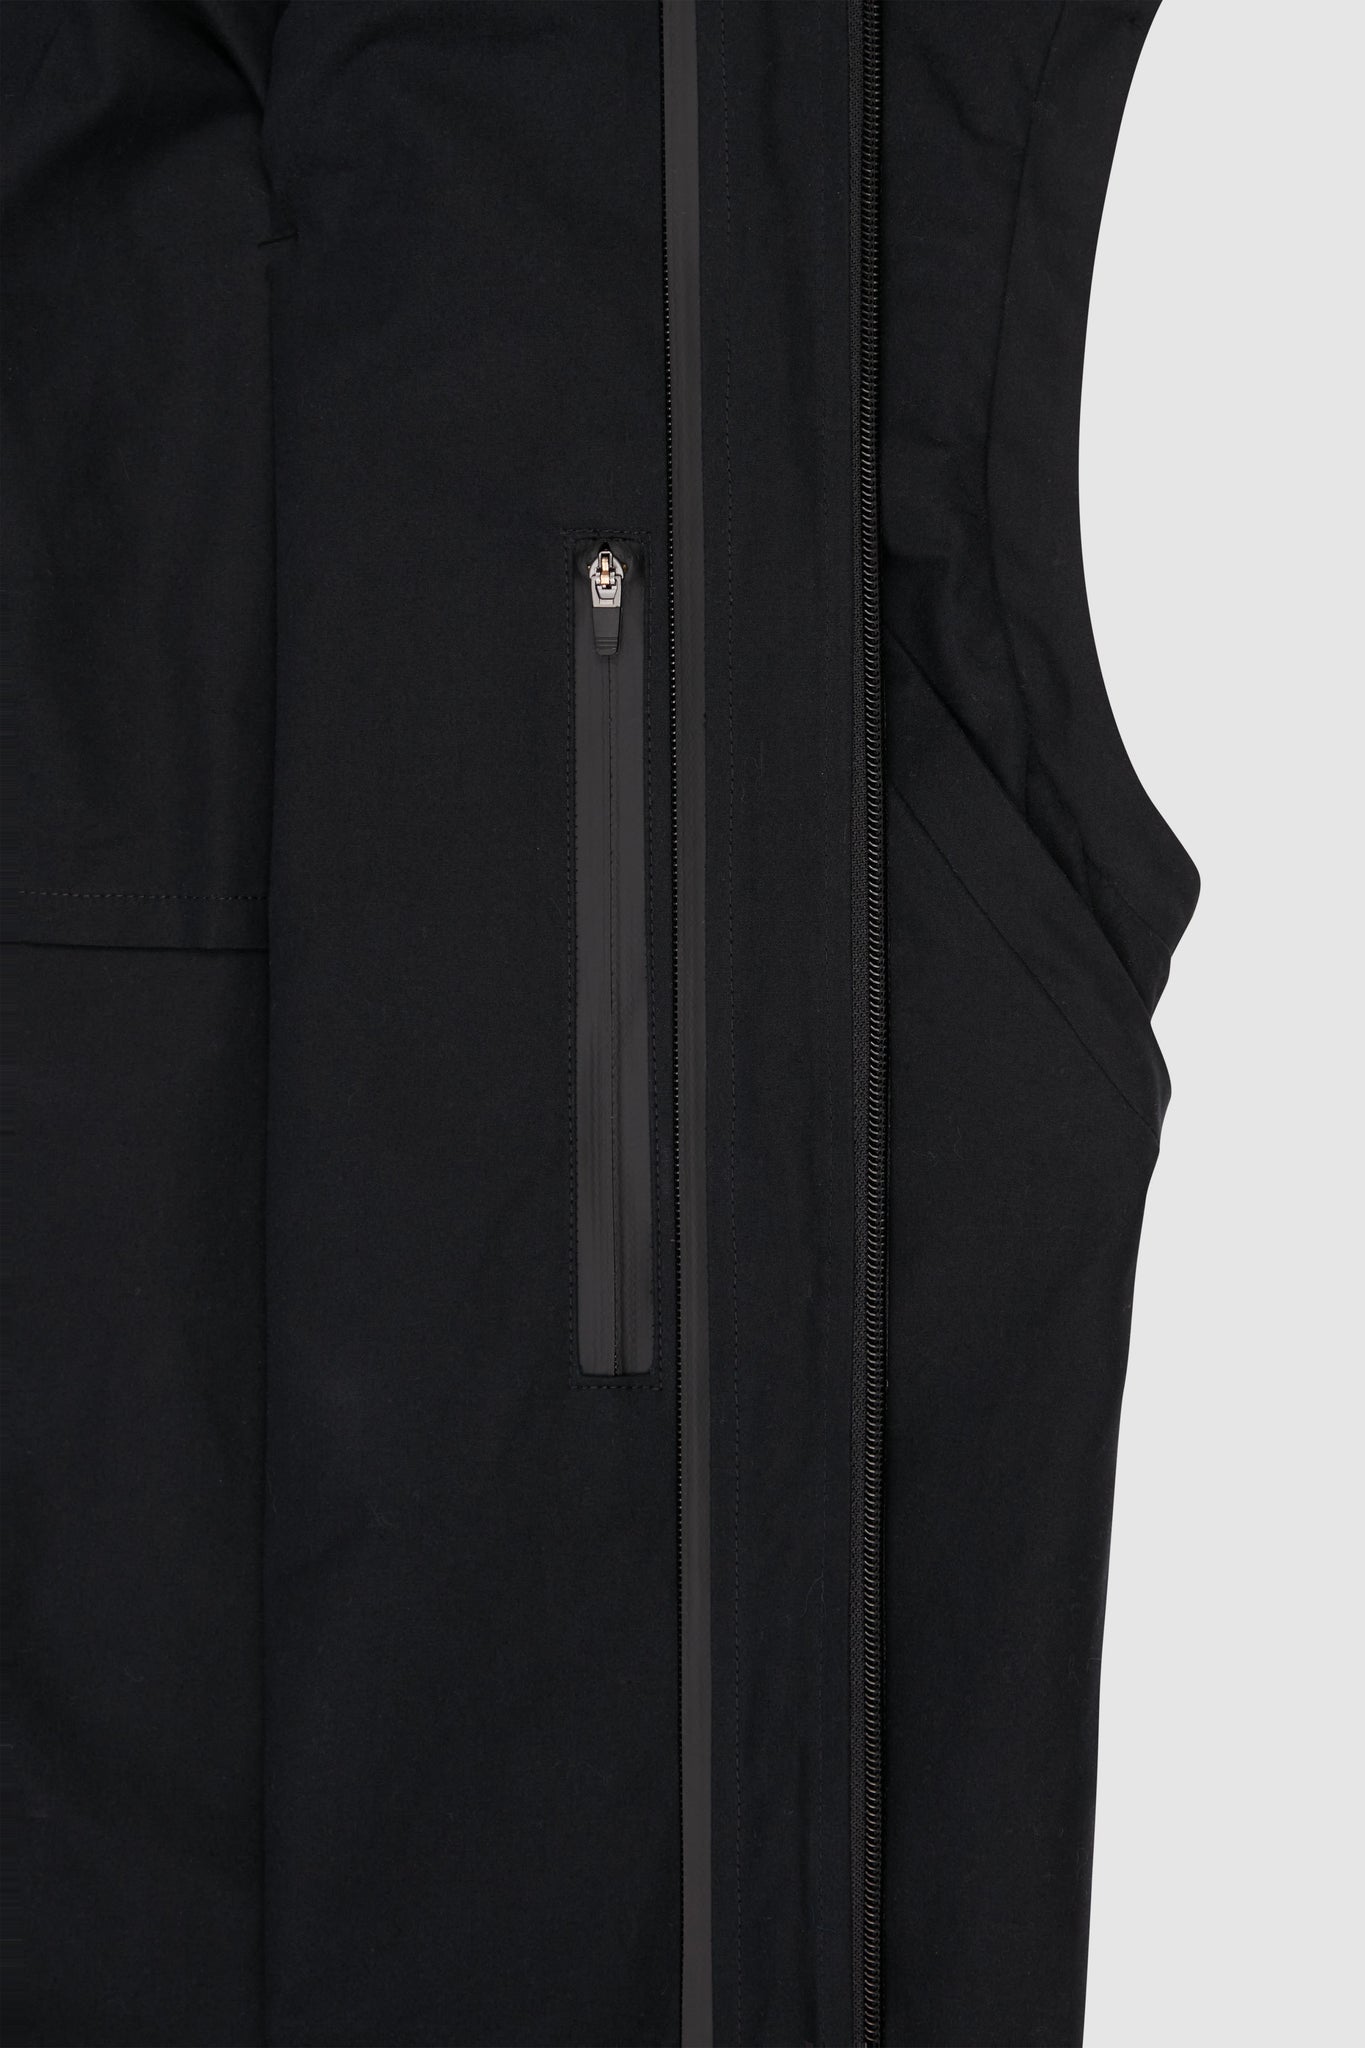 Inside Pocket Detail with waterproof zipper. 